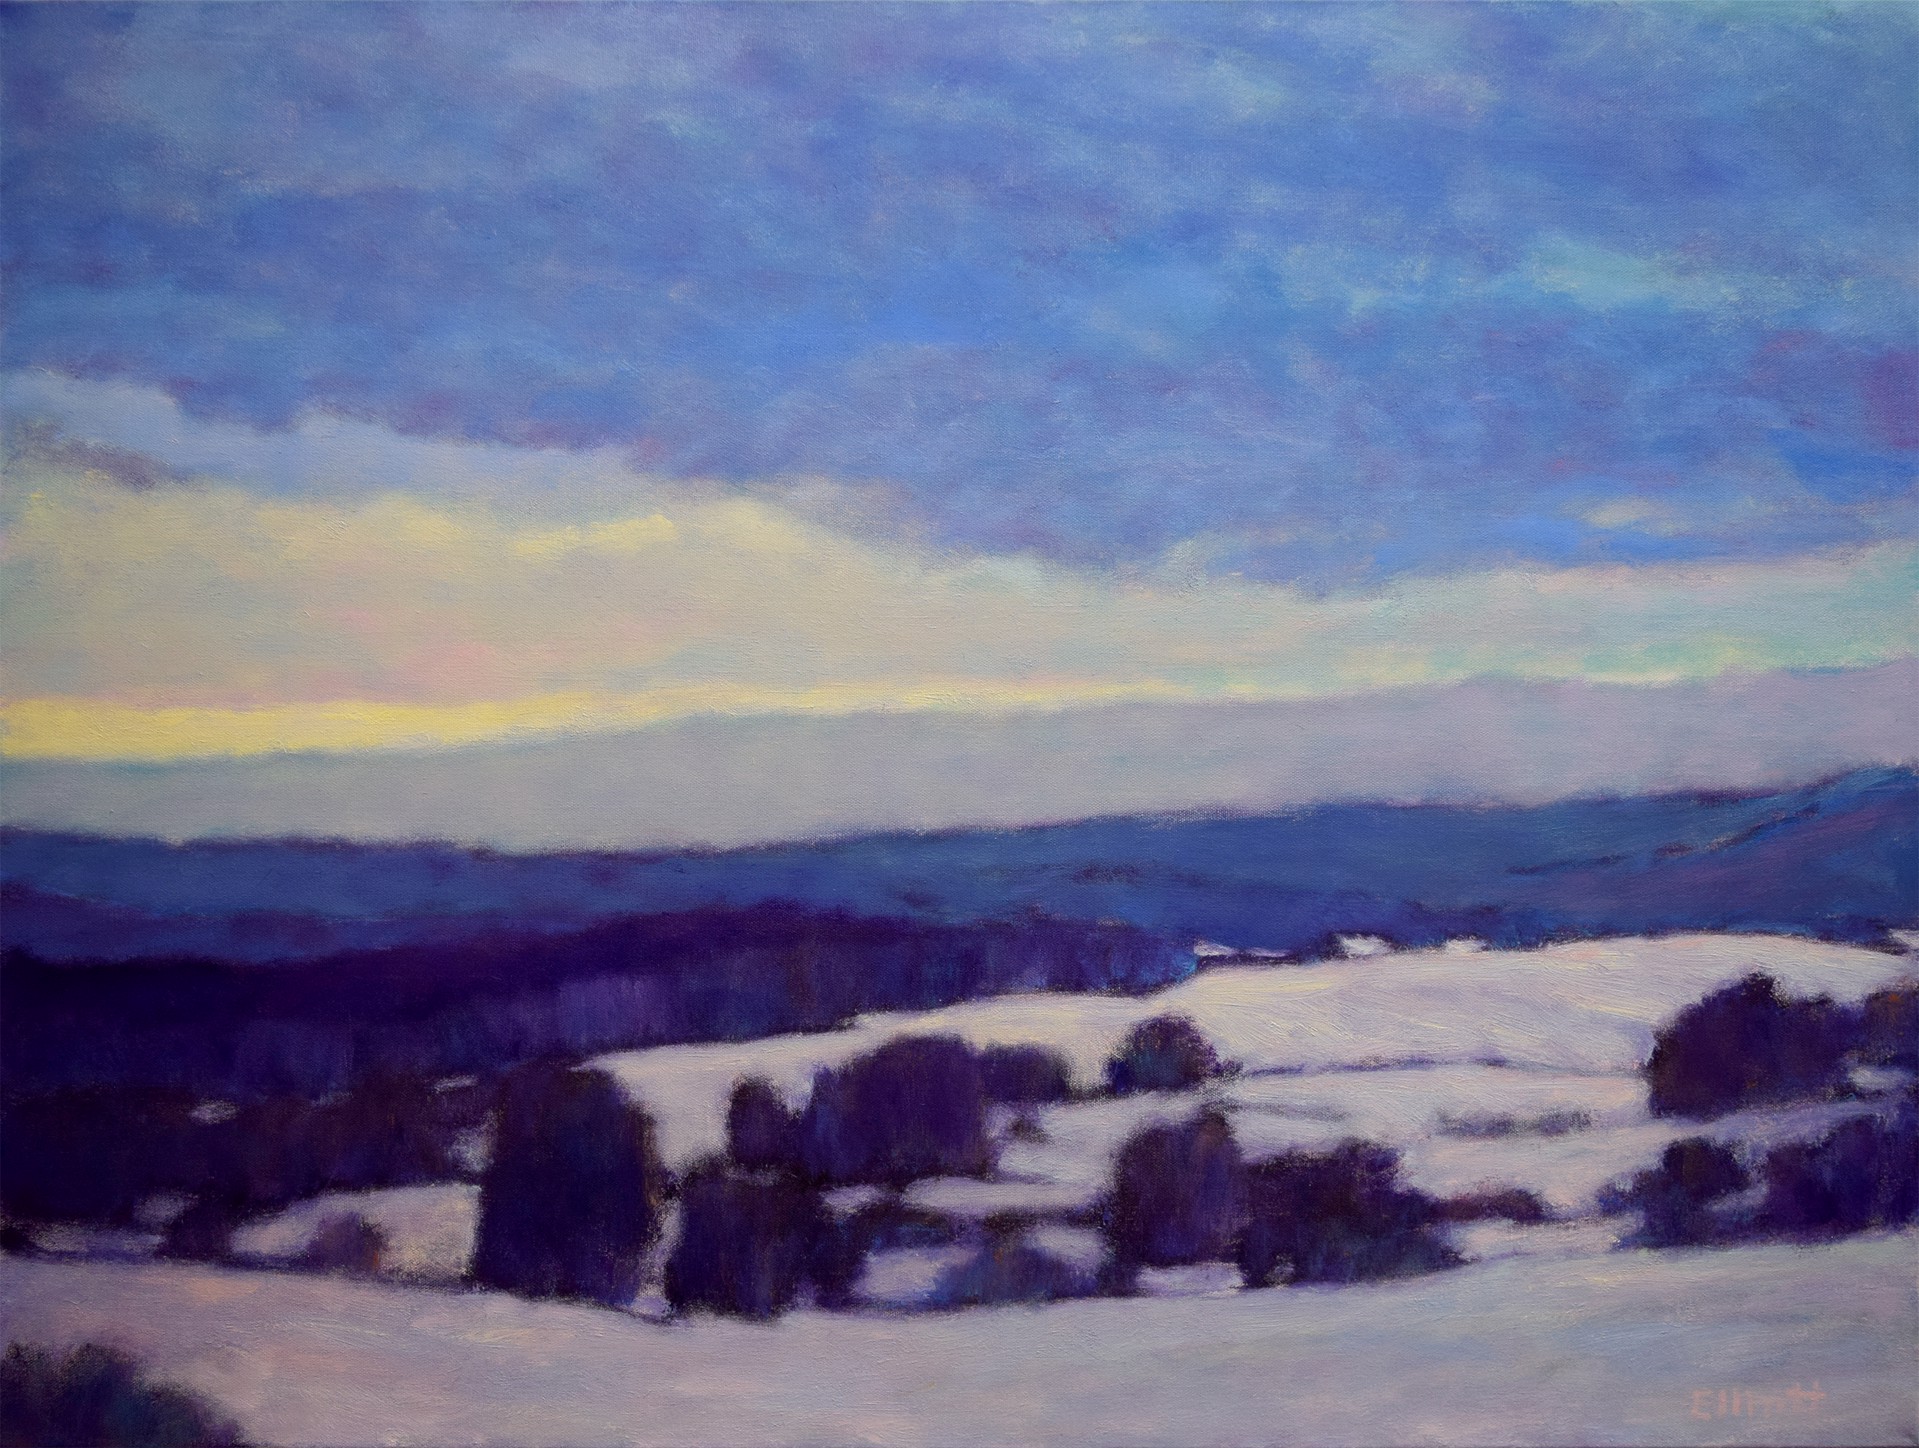 Winter Light I by Ken Elliott